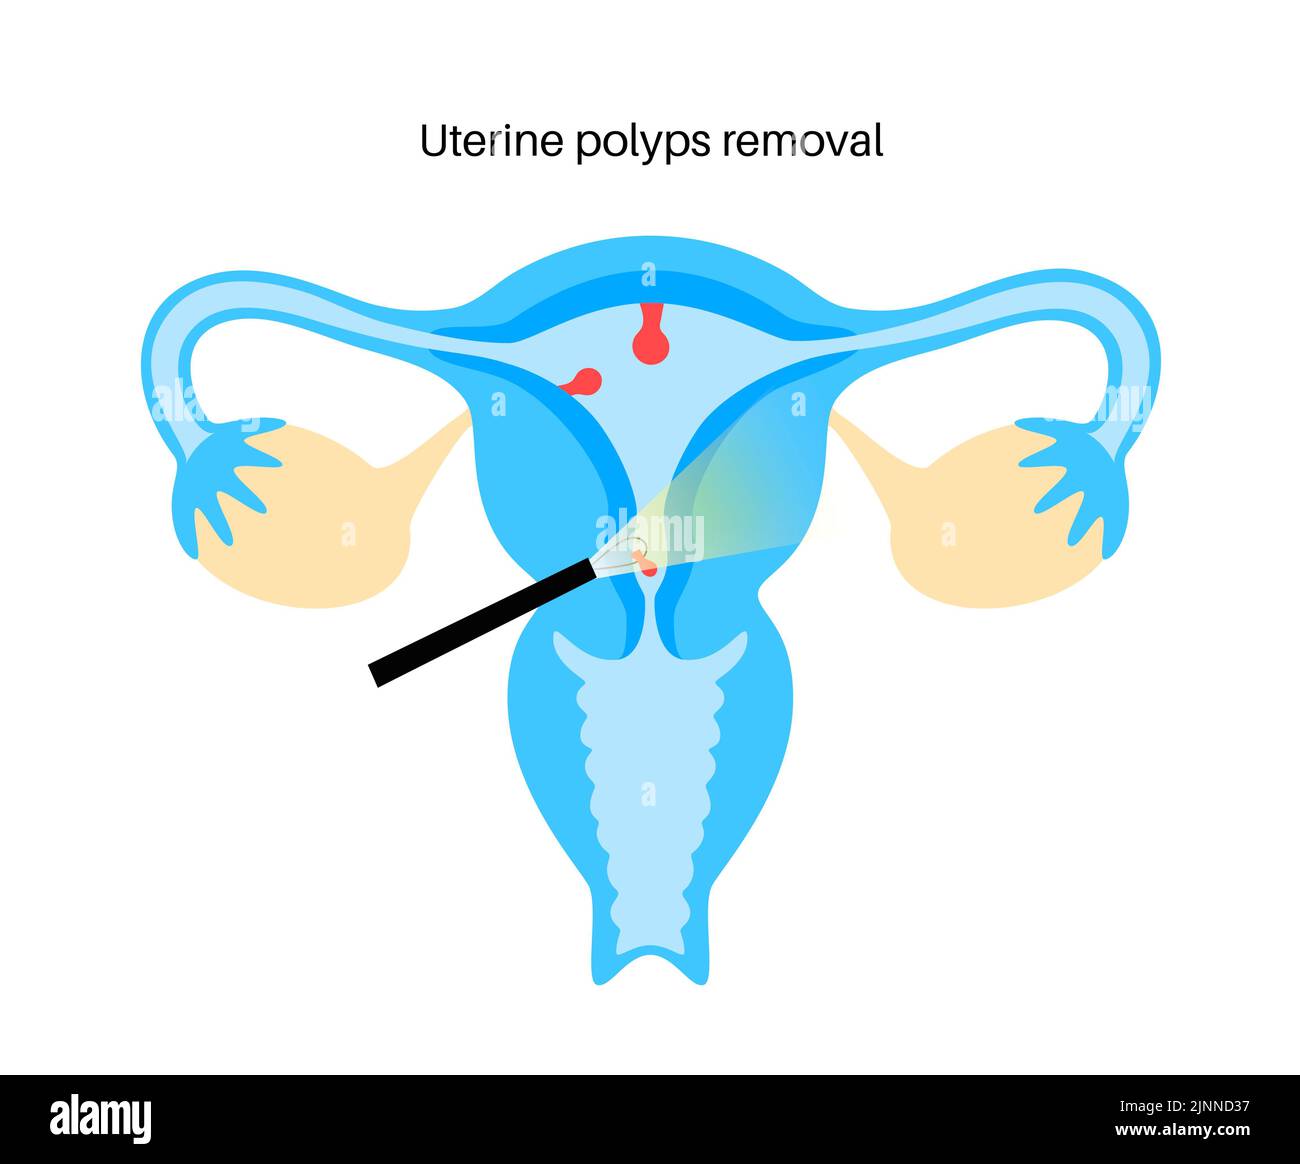 Polypes utérins, illustration Banque D'Images